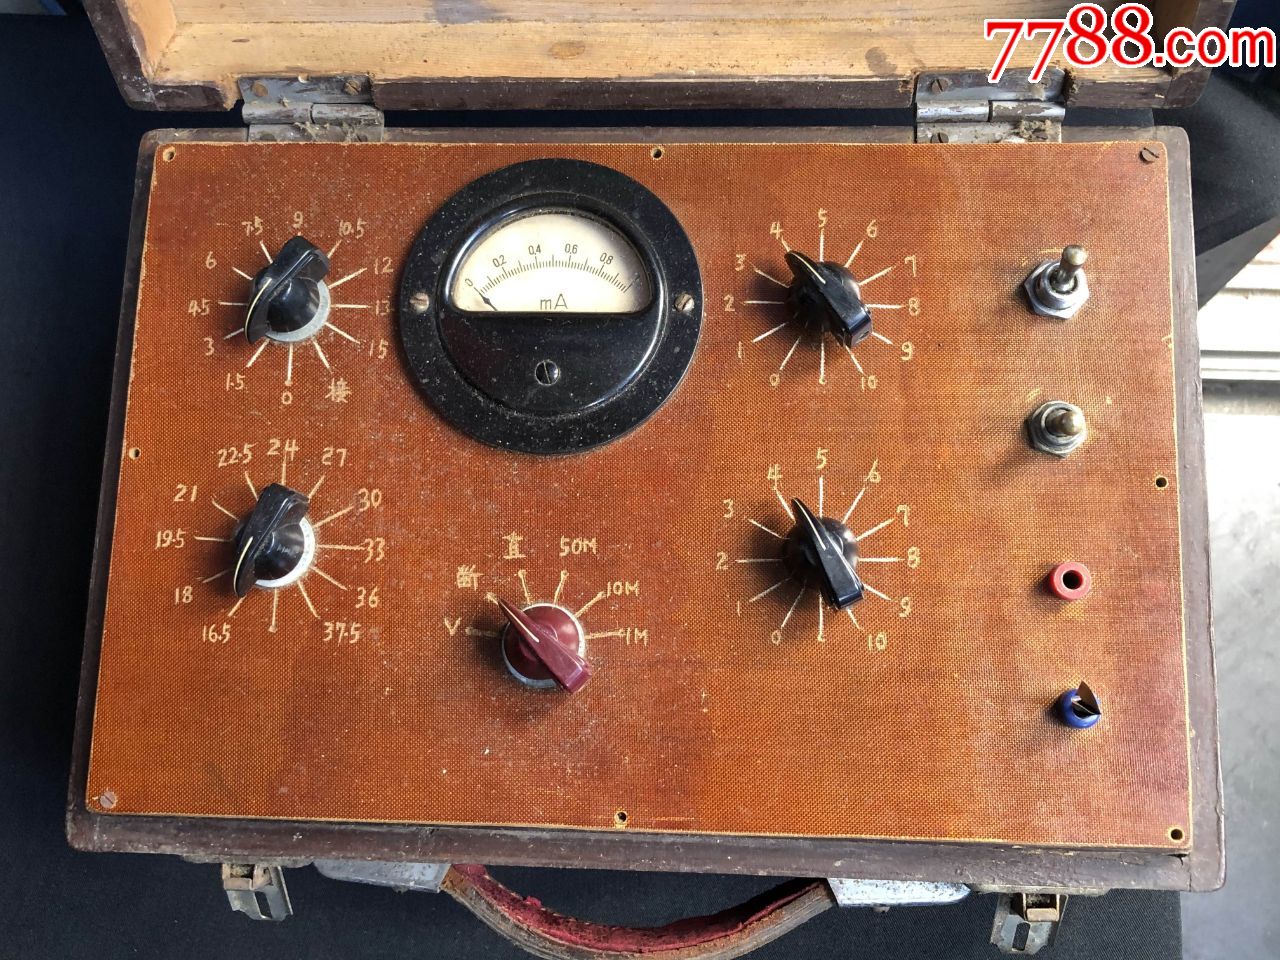 老式无线电盒子仪器设备一台